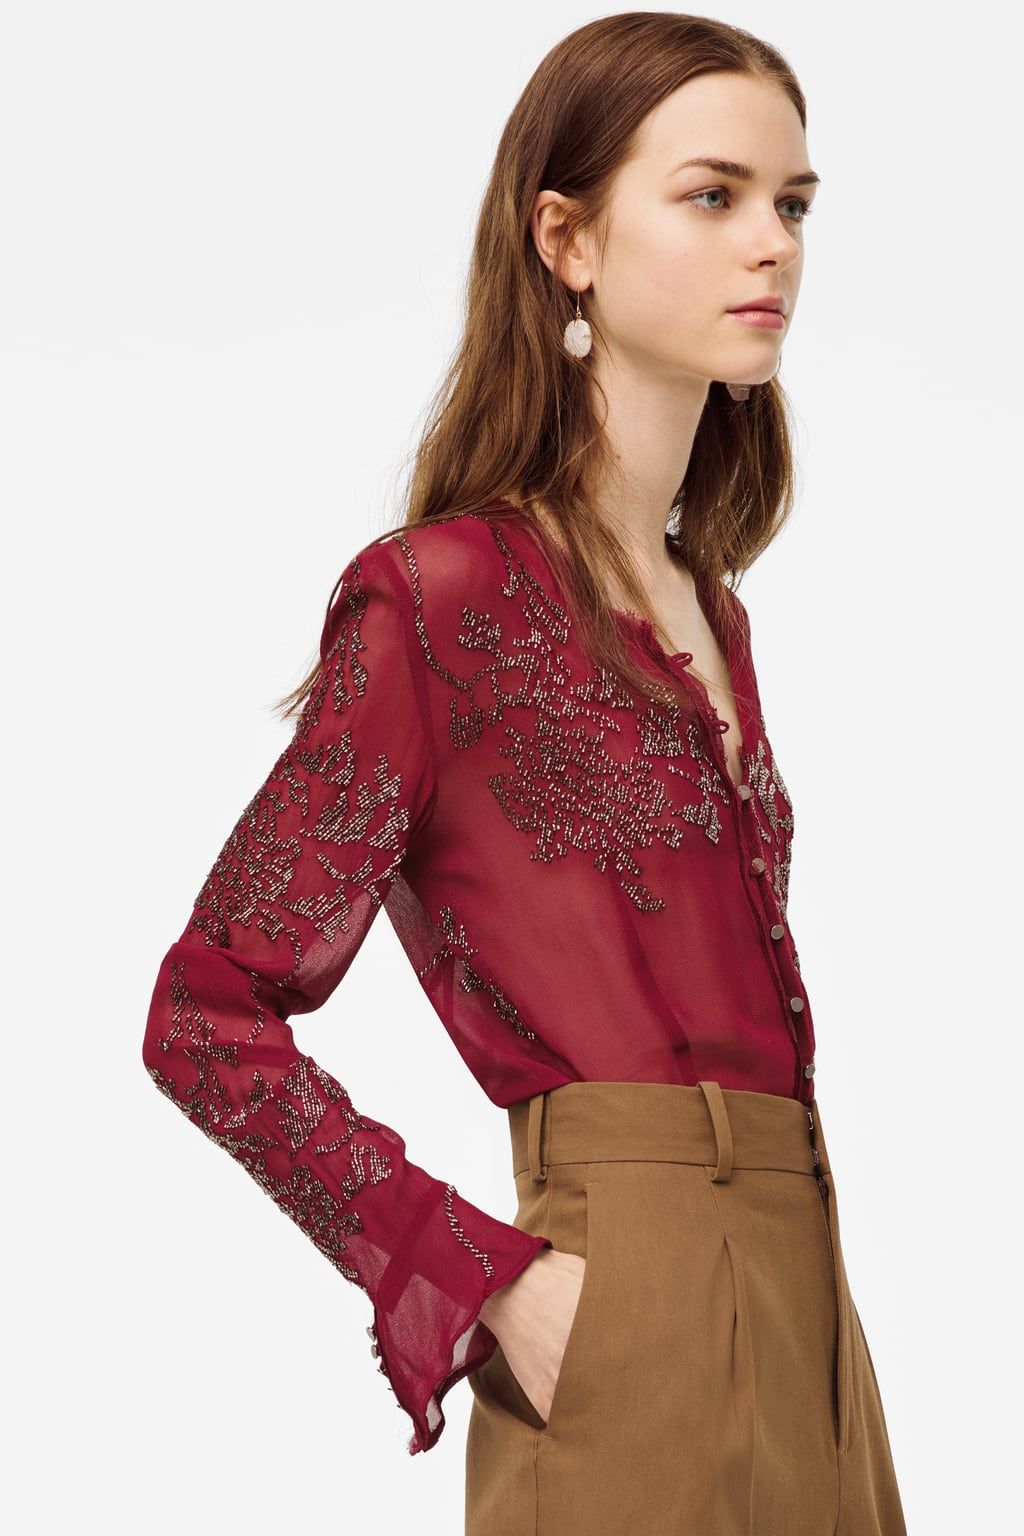 Nueve Latón pintar La blusa de Zara bordada semitransparente parece de Alta Costura